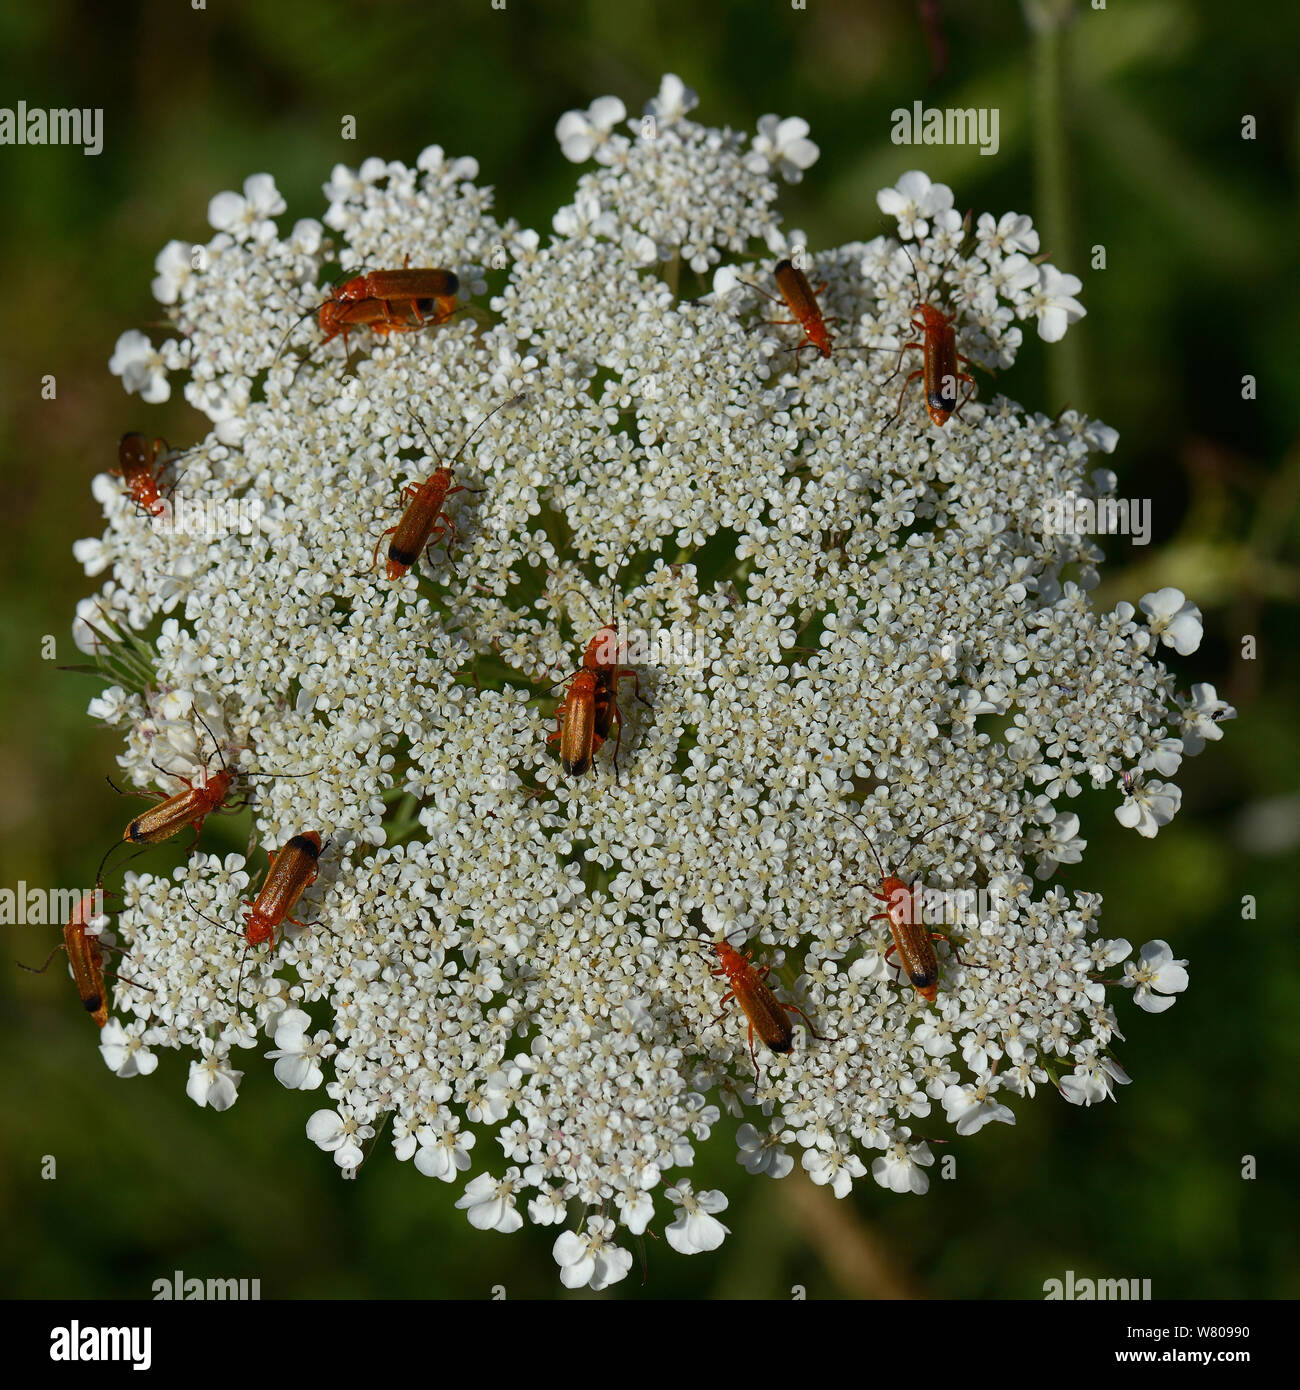 Les coléoptères (soldat rouge commun Rhagonicha fulva) sur la carotte sauvage (Daucus carota) Vendée, France, juin Banque D'Images